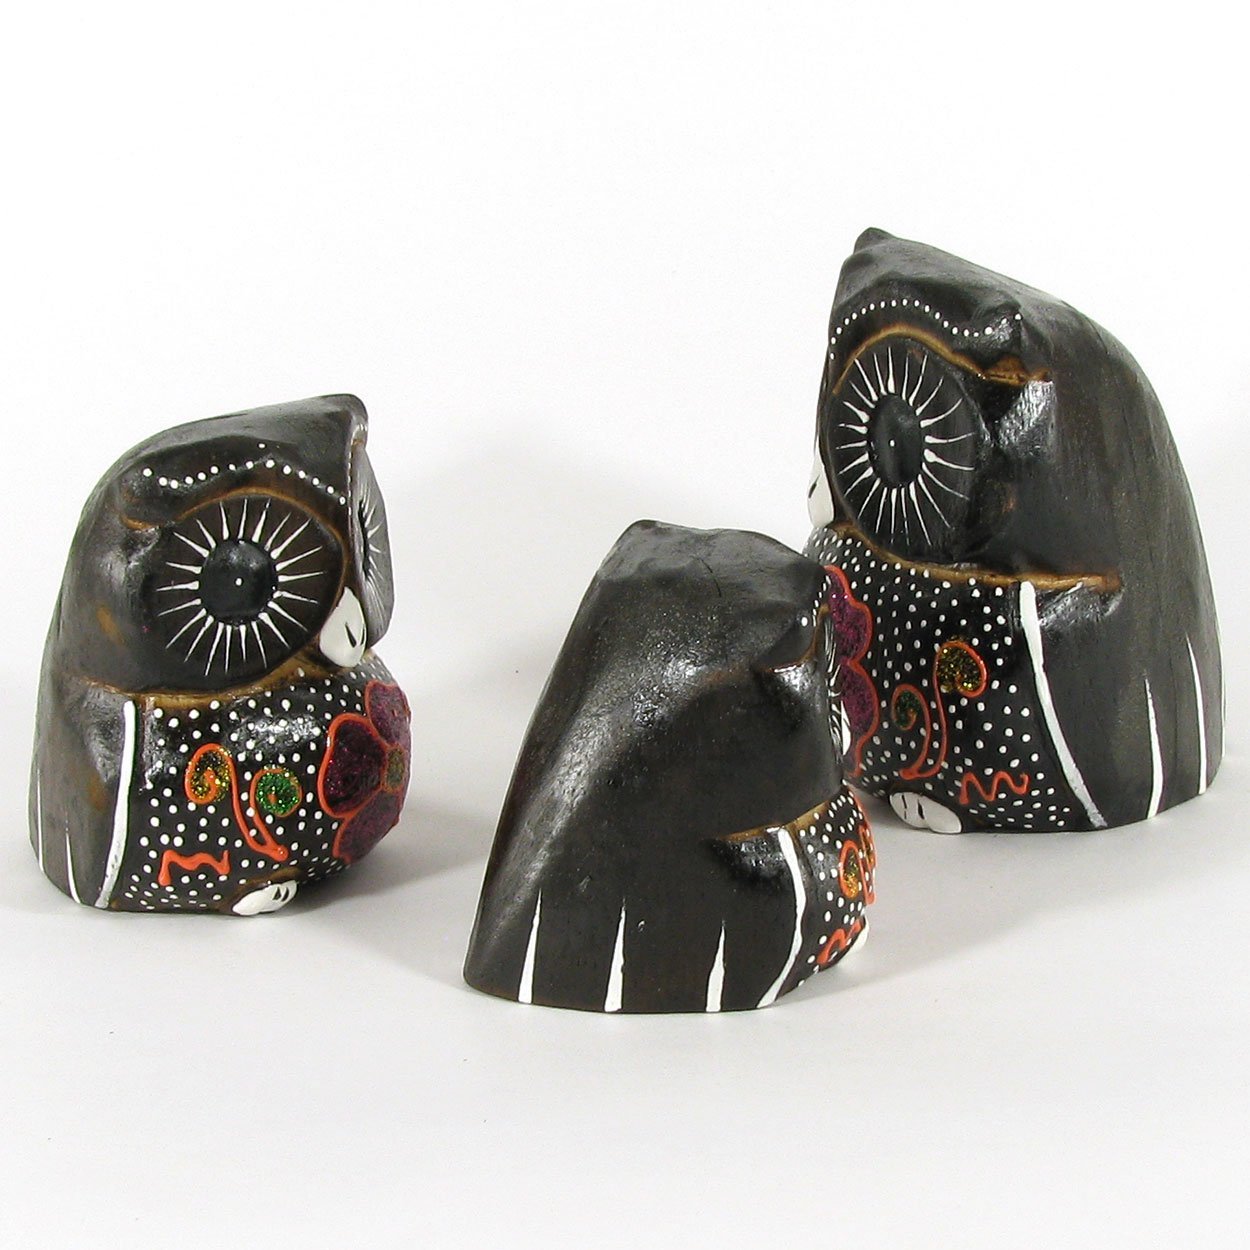 140040 - Set of Three 2-4in Owls Painted Rustic Wood Folk Art Carvings - Purple Flowers